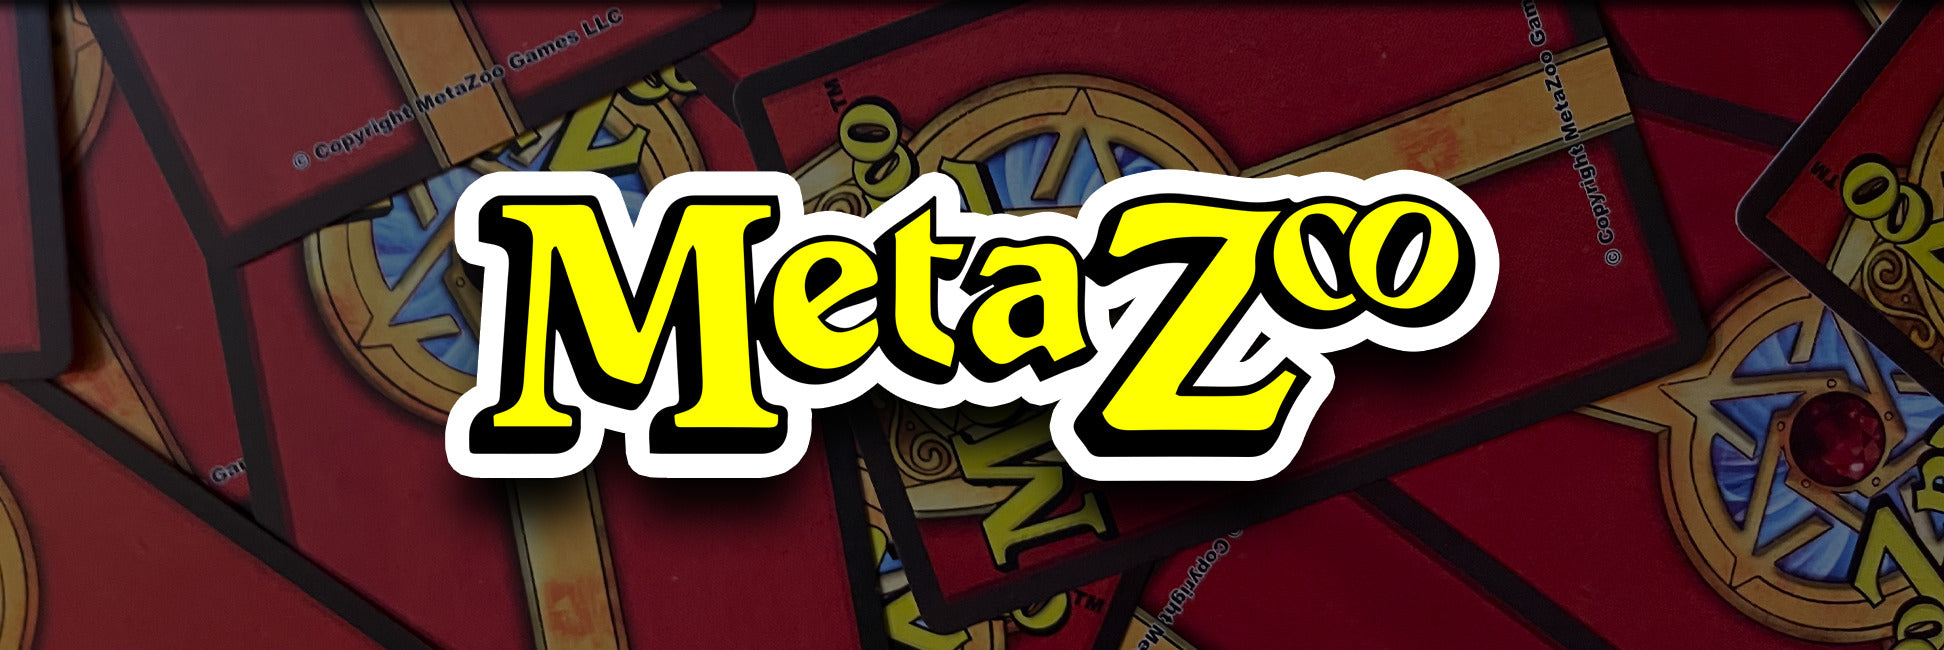 MetaZoo Pre-Order